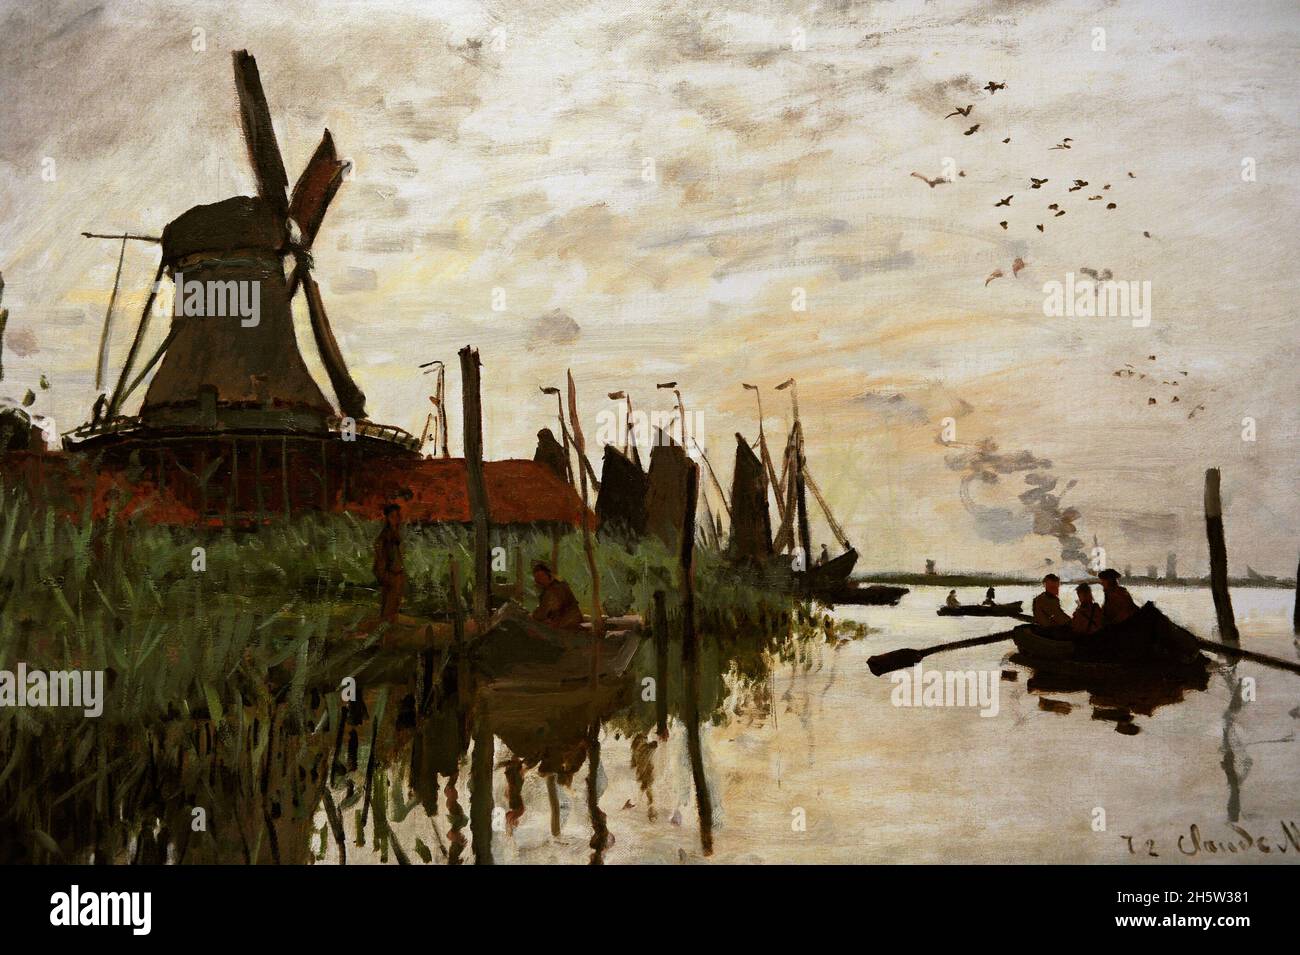 Claude Monet (1840-1926). Pittore impressionista francese. Mulino a vento e barche a Zaandam, Paesi Bassi. Olio su tela, 1871. NY Carlsberg Glyptotek. Copenaghen, Danimarca. Foto Stock